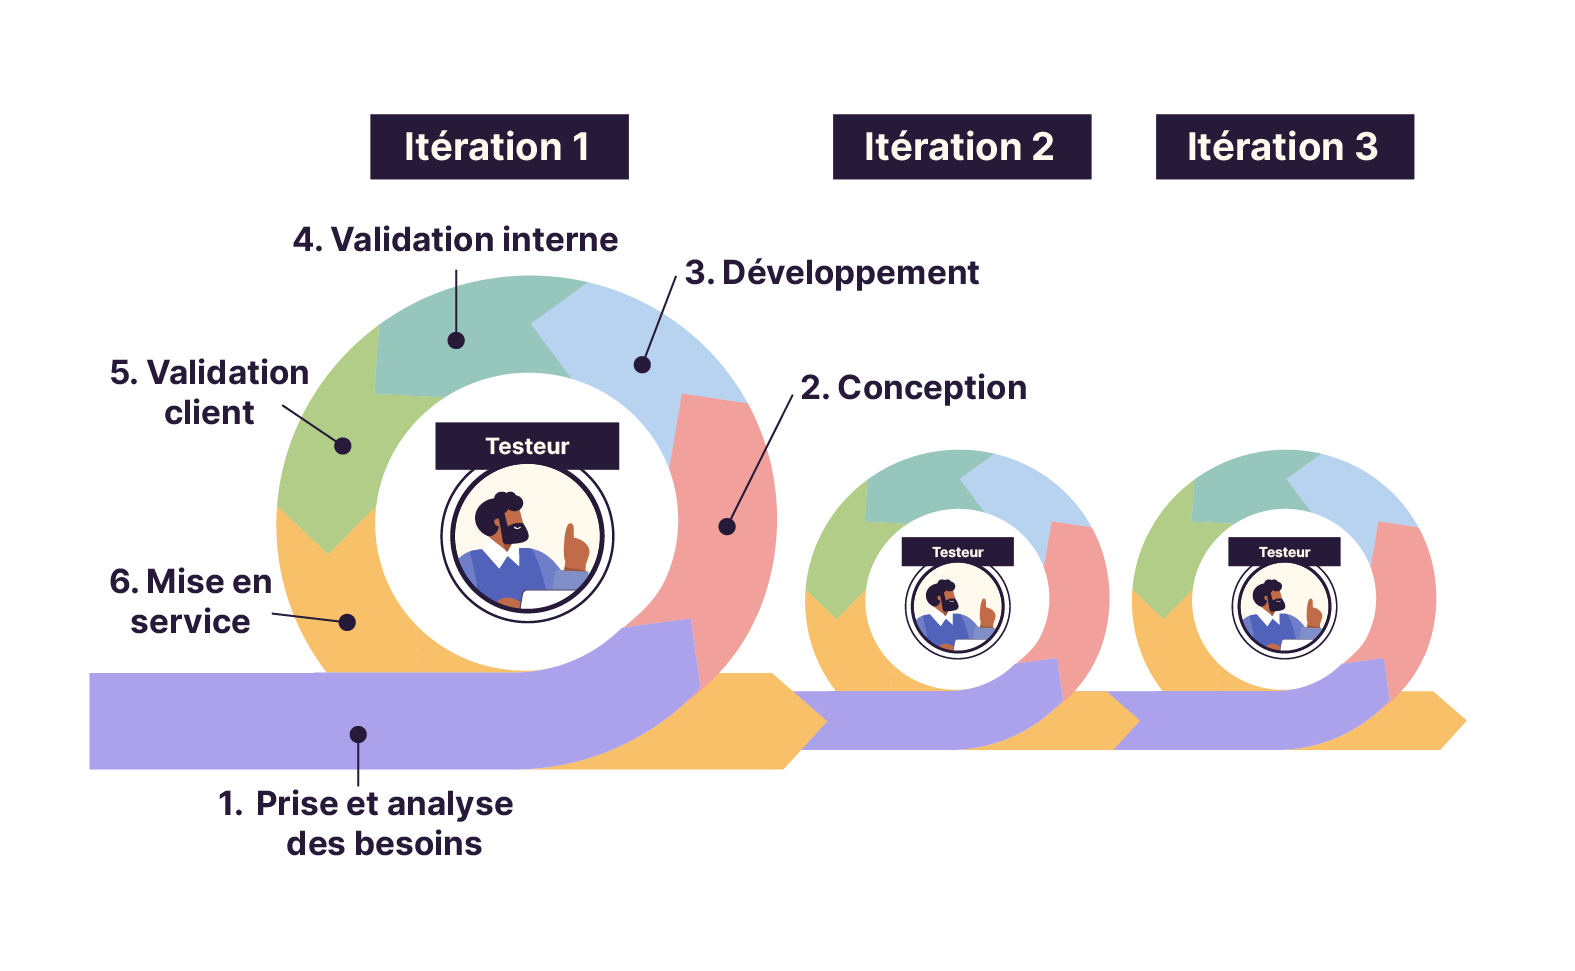 Trois itérations sont illustrées. La première indique les six étapes du modèle agile. Le personnage du testeur est relié à chaque itération.